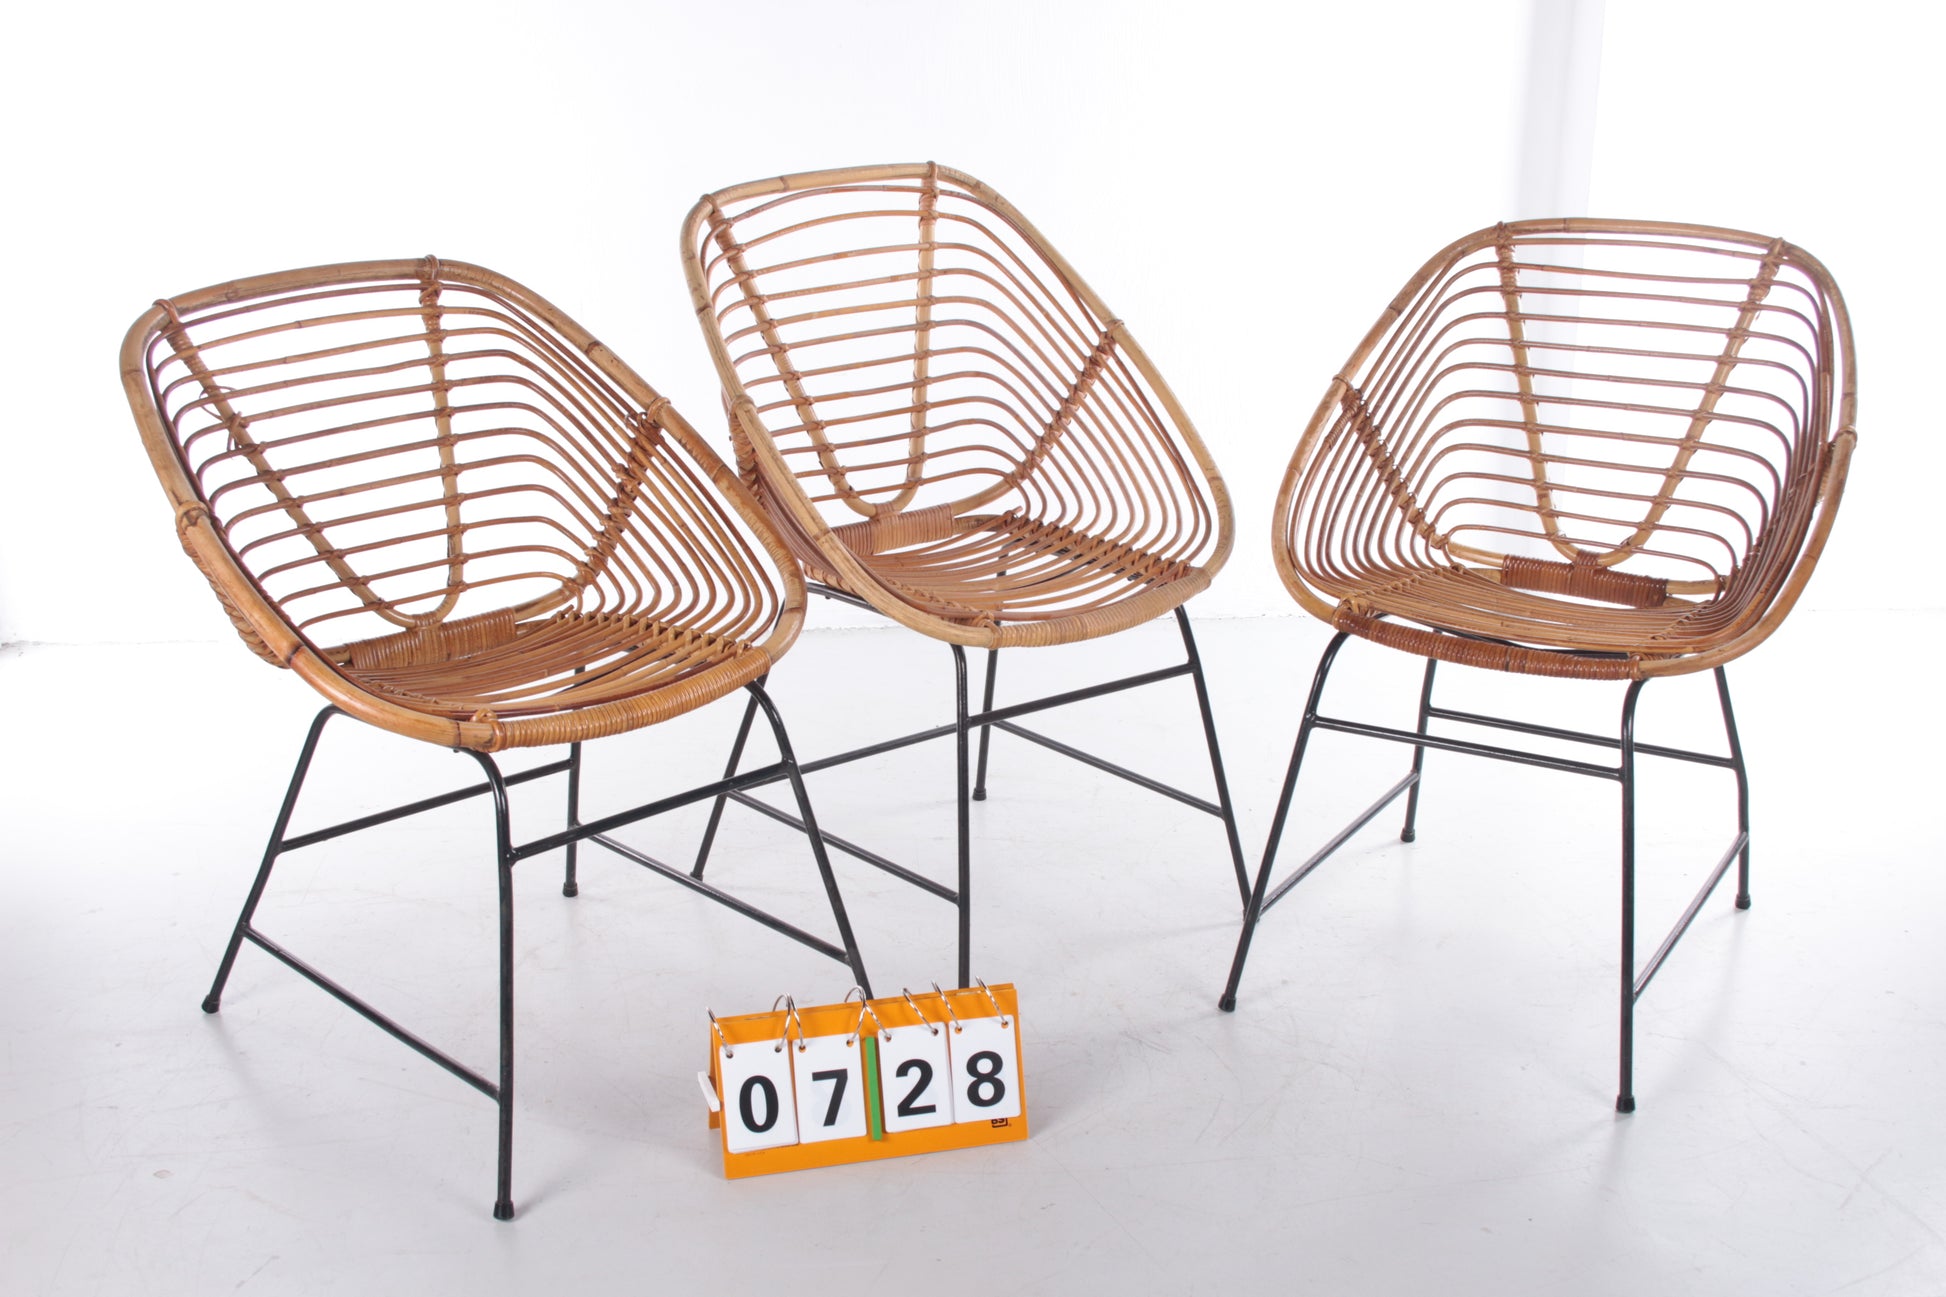 Vintage Bamboe Design stoel jaren60 Dirk van Sliedrecht Style,Set van 3 voorkant